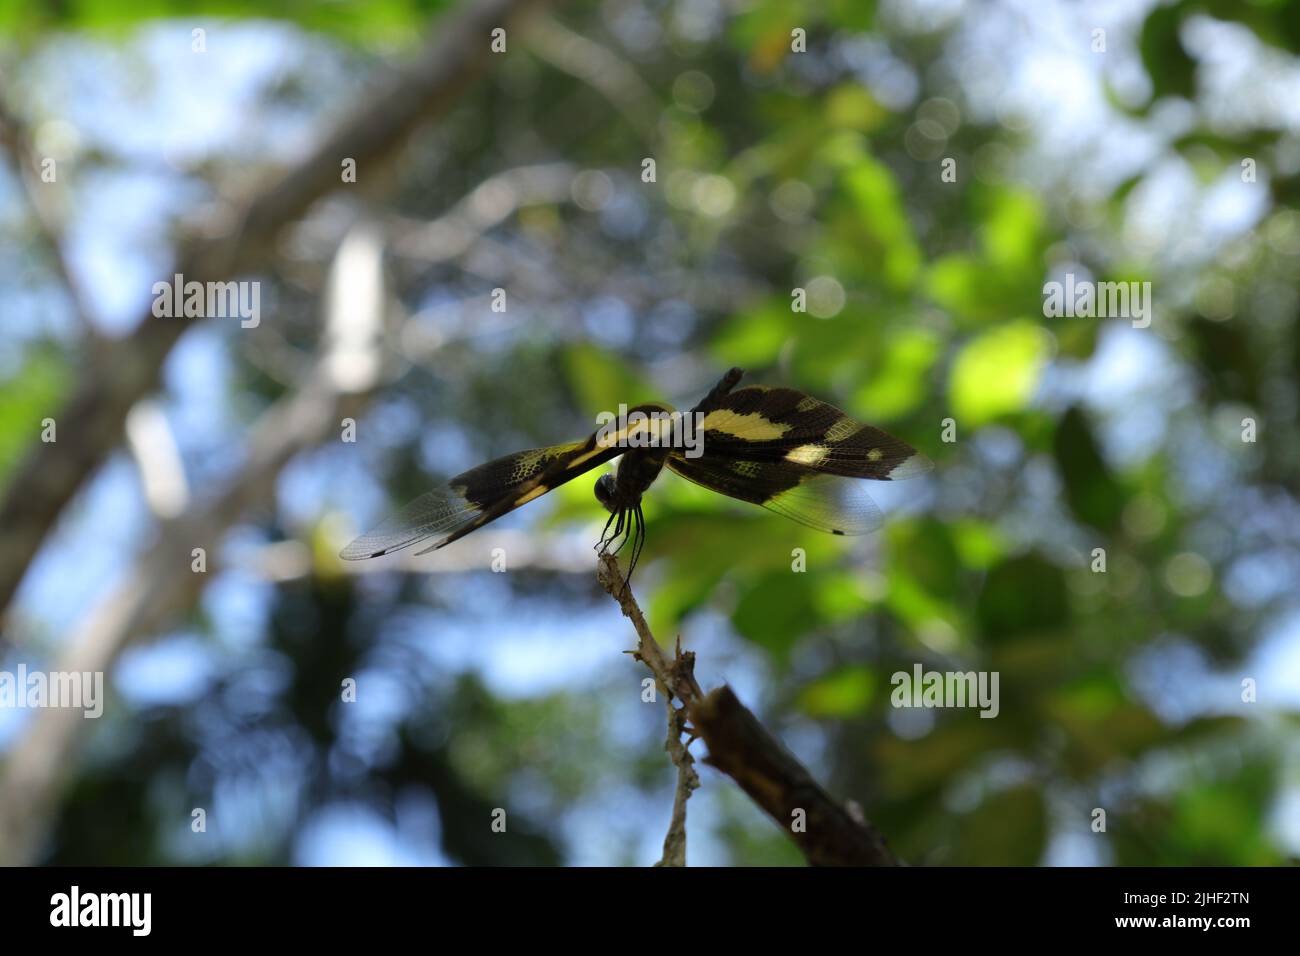 Une libellule à flutterer (Rhyothemis variegata) est perchée au-dessus d'une pointe de tige sèche tout en écartant ses ailes inclinées vers la vue à gauche, à angle bas f Banque D'Images